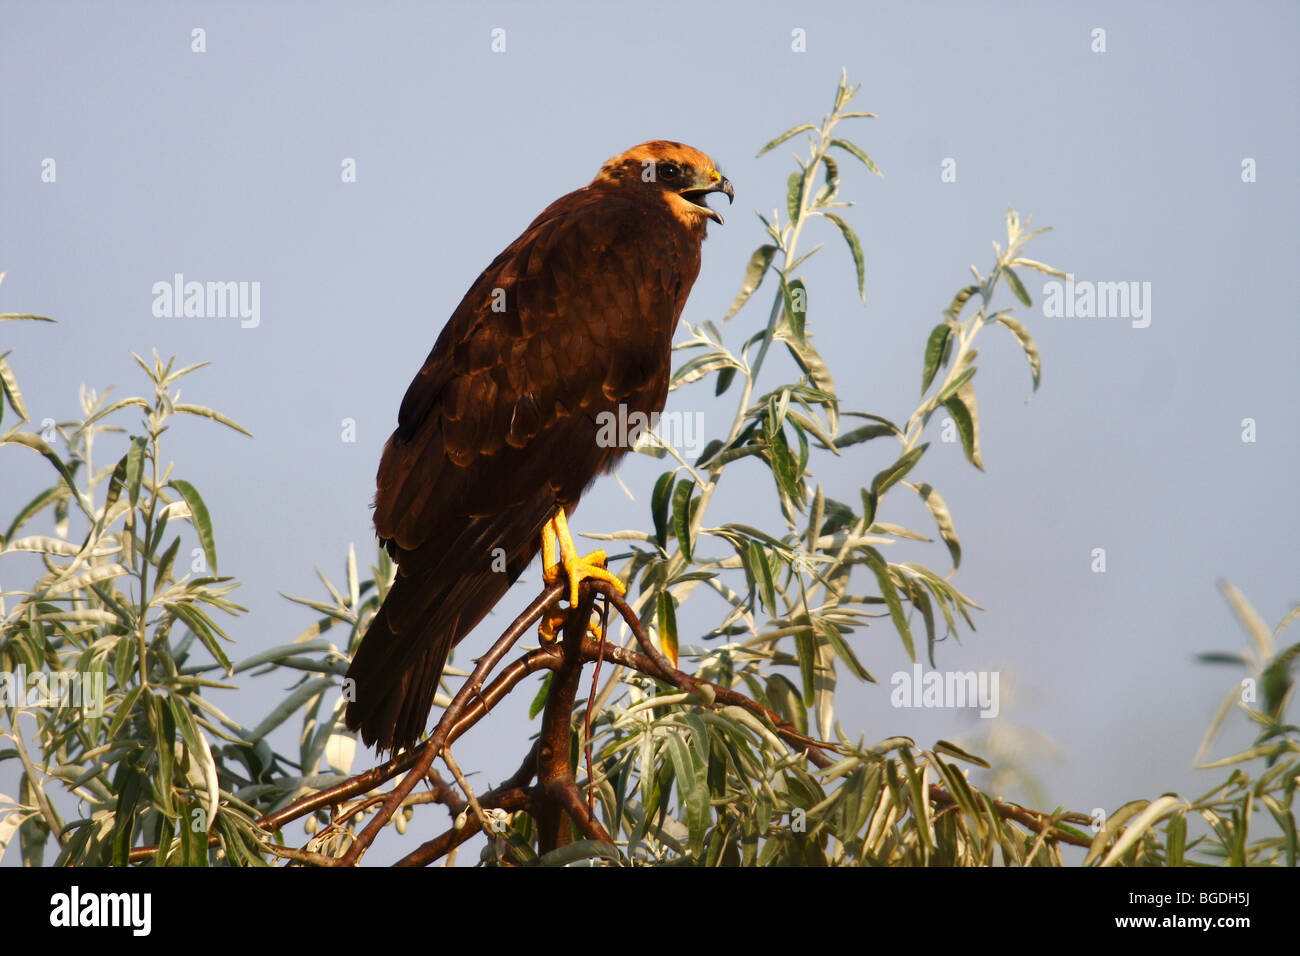 Busard des roseaux (Circus aeruginosus), jeune oiseau appelant alors que perché sur une branche, le lac de Neusiedl, Burgenland, Autriche, Europe Banque D'Images